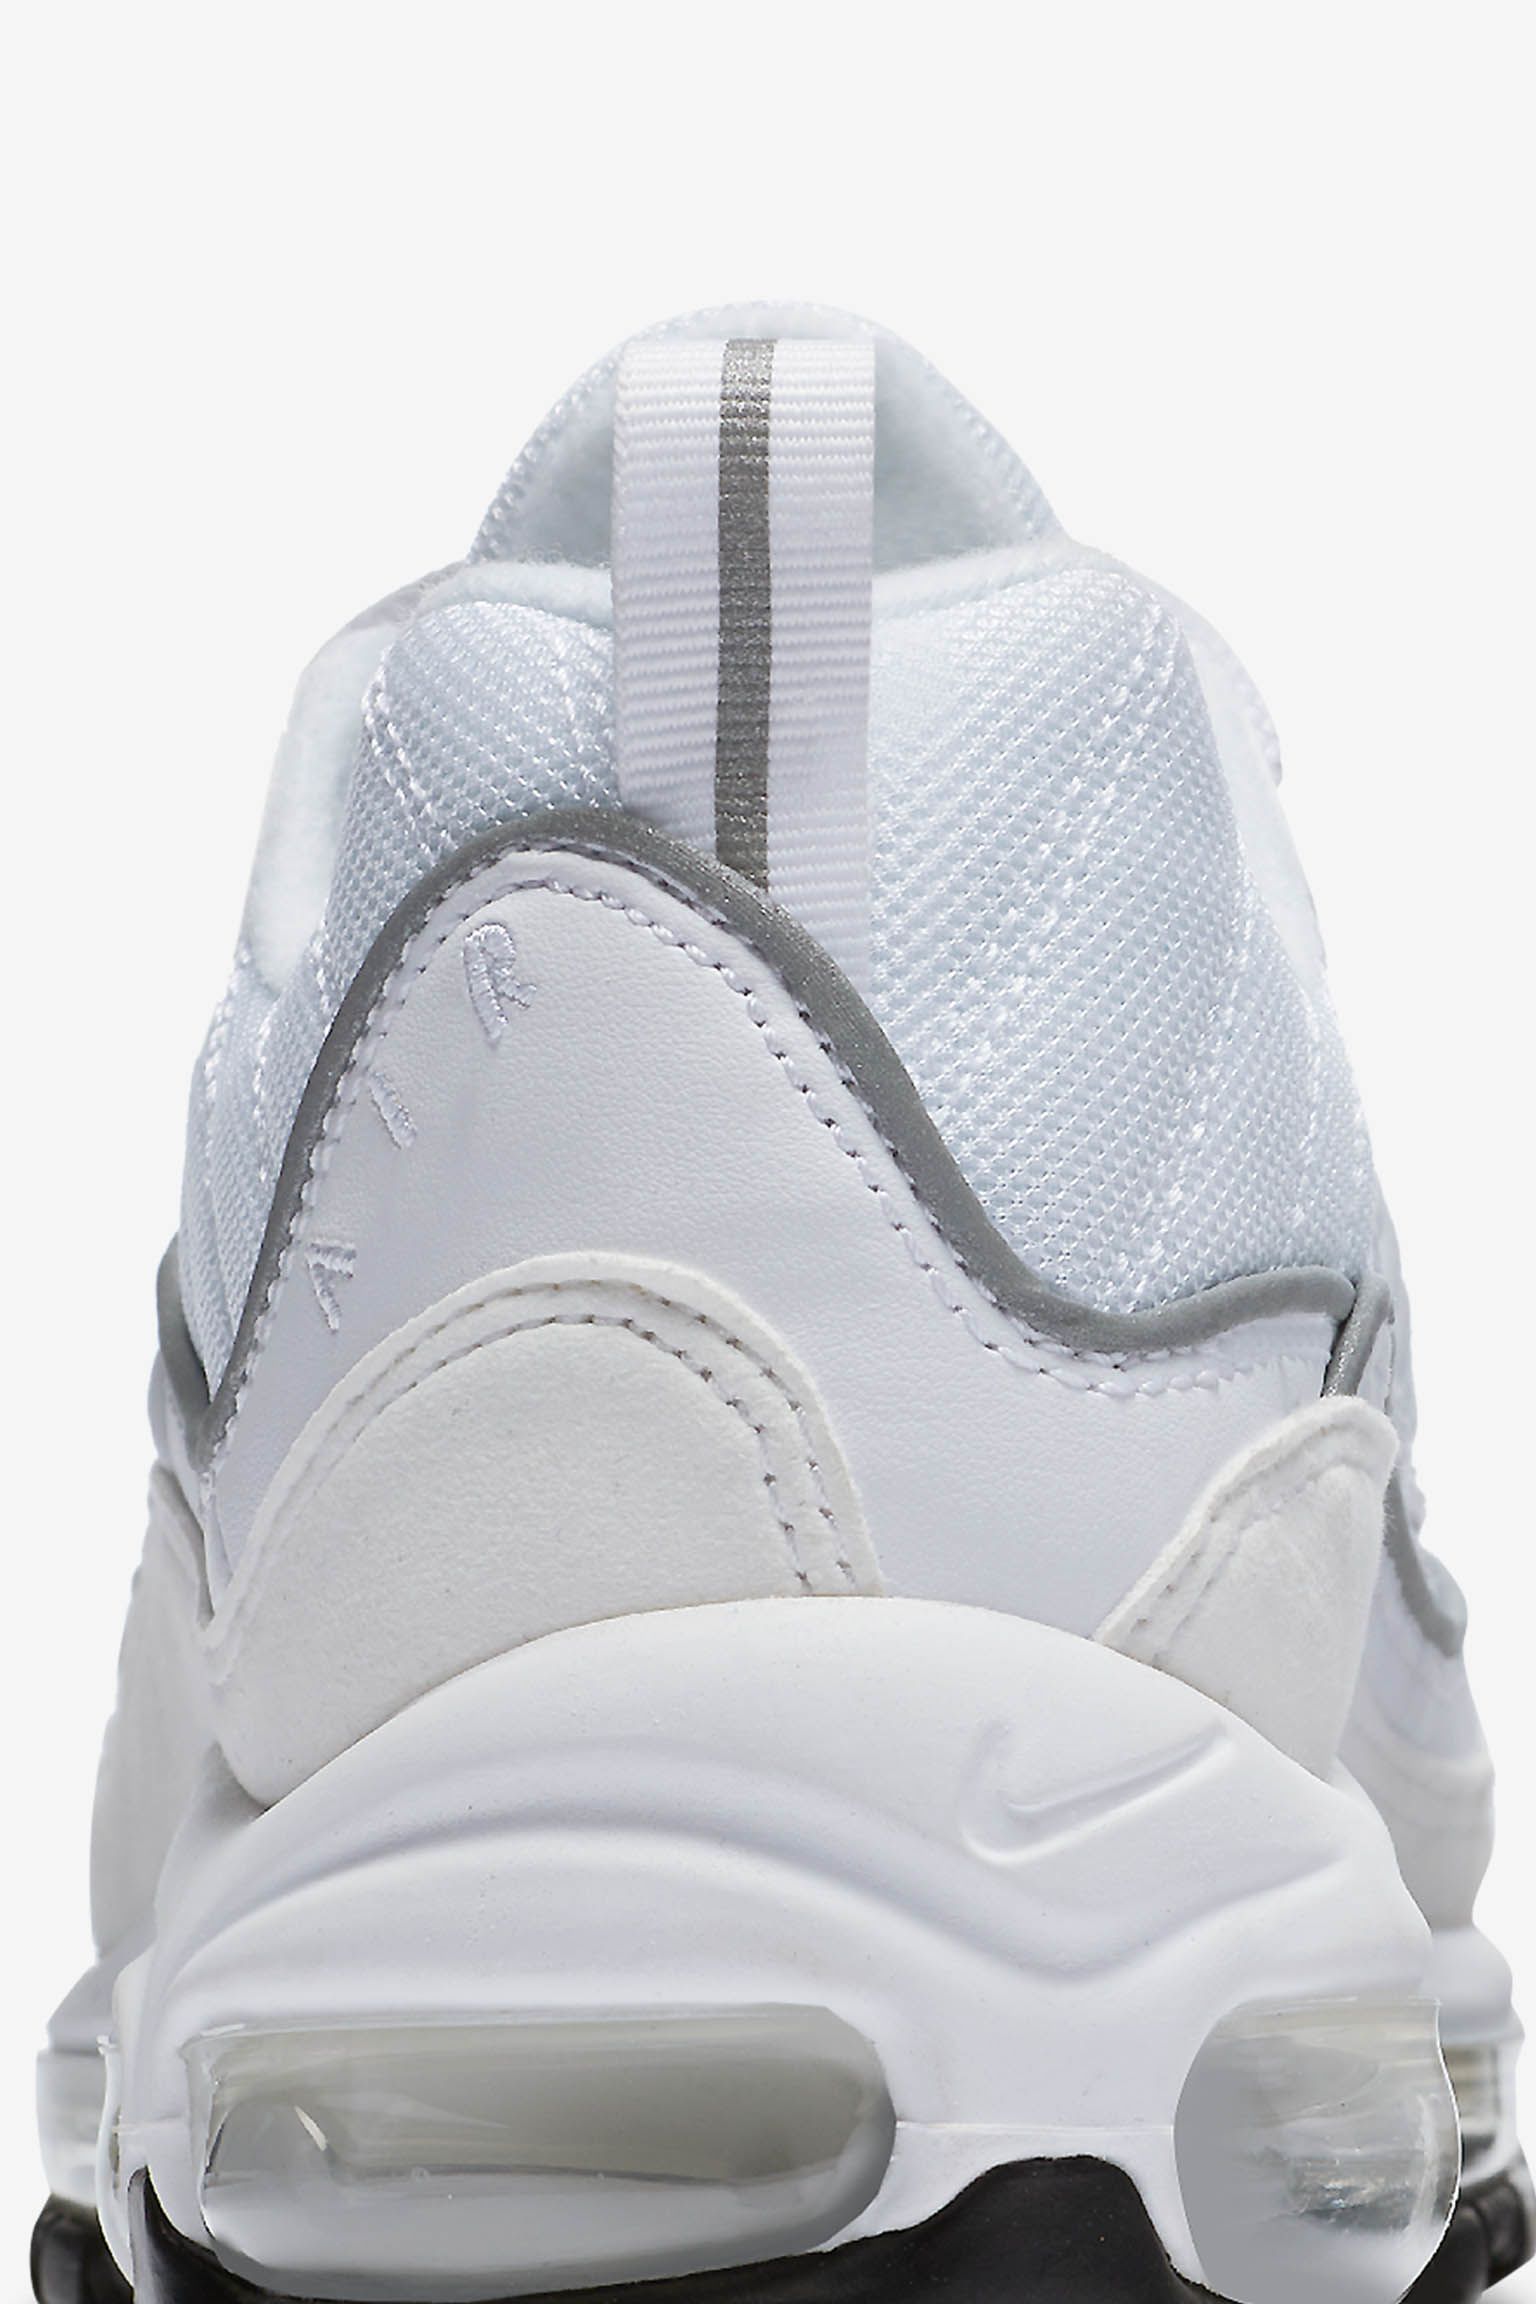 Lanceringsdato for Nike Air Max 'White &amp; Reflective Silver' til kvinder. Nike SNKRS DK